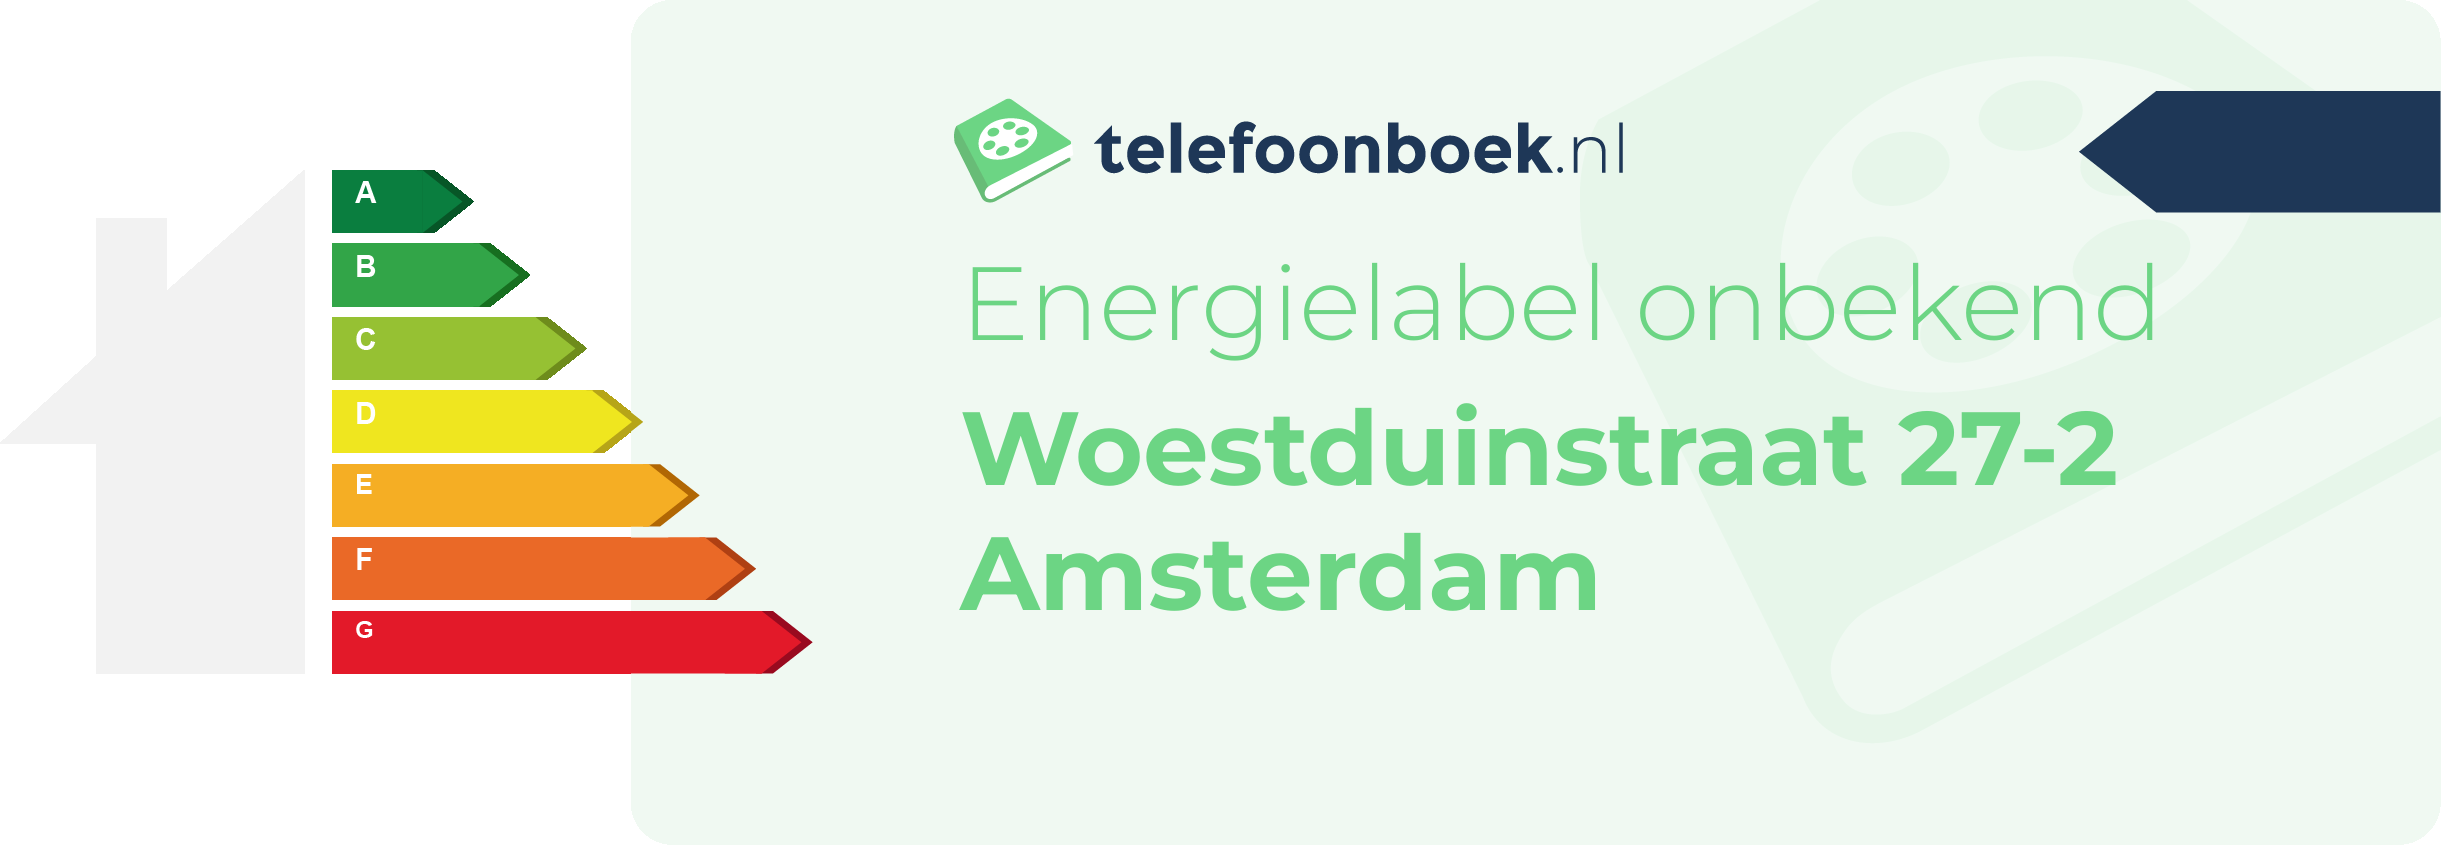 Energielabel Woestduinstraat 27-2 Amsterdam